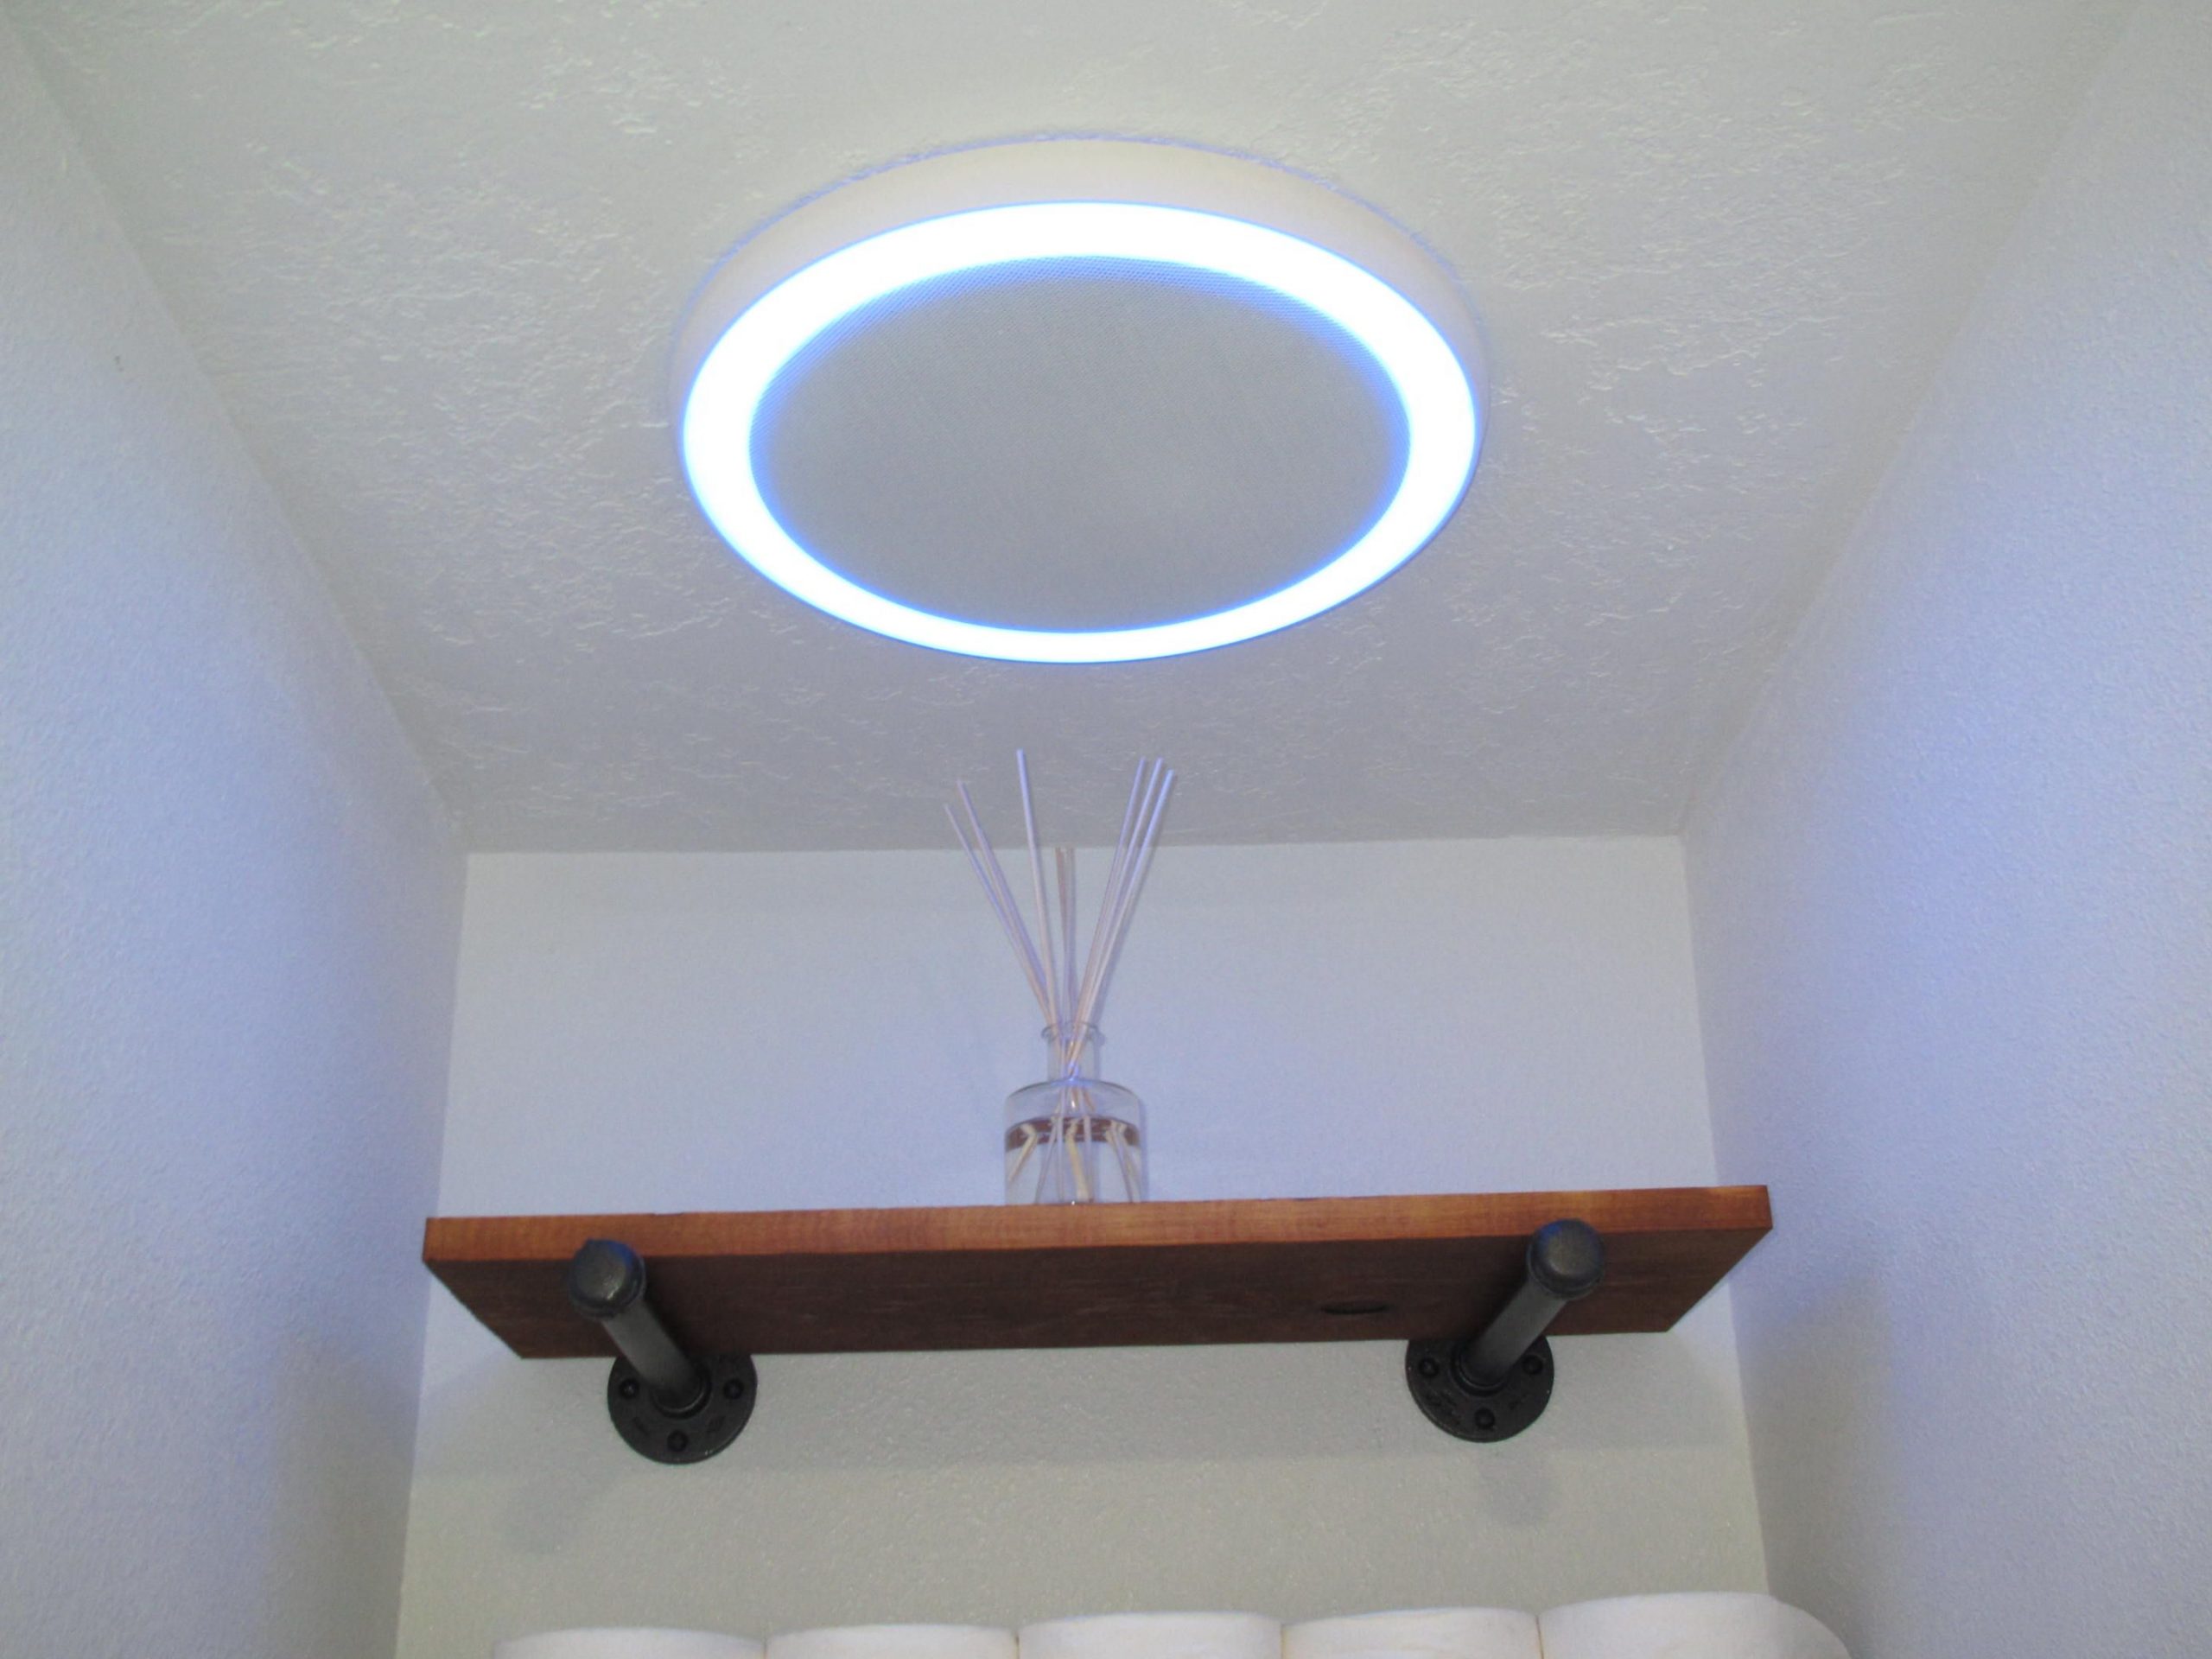 Bathroom Fan Wbluetooth Speaker Light And Blue Nightlight in measurements 2816 X 2112